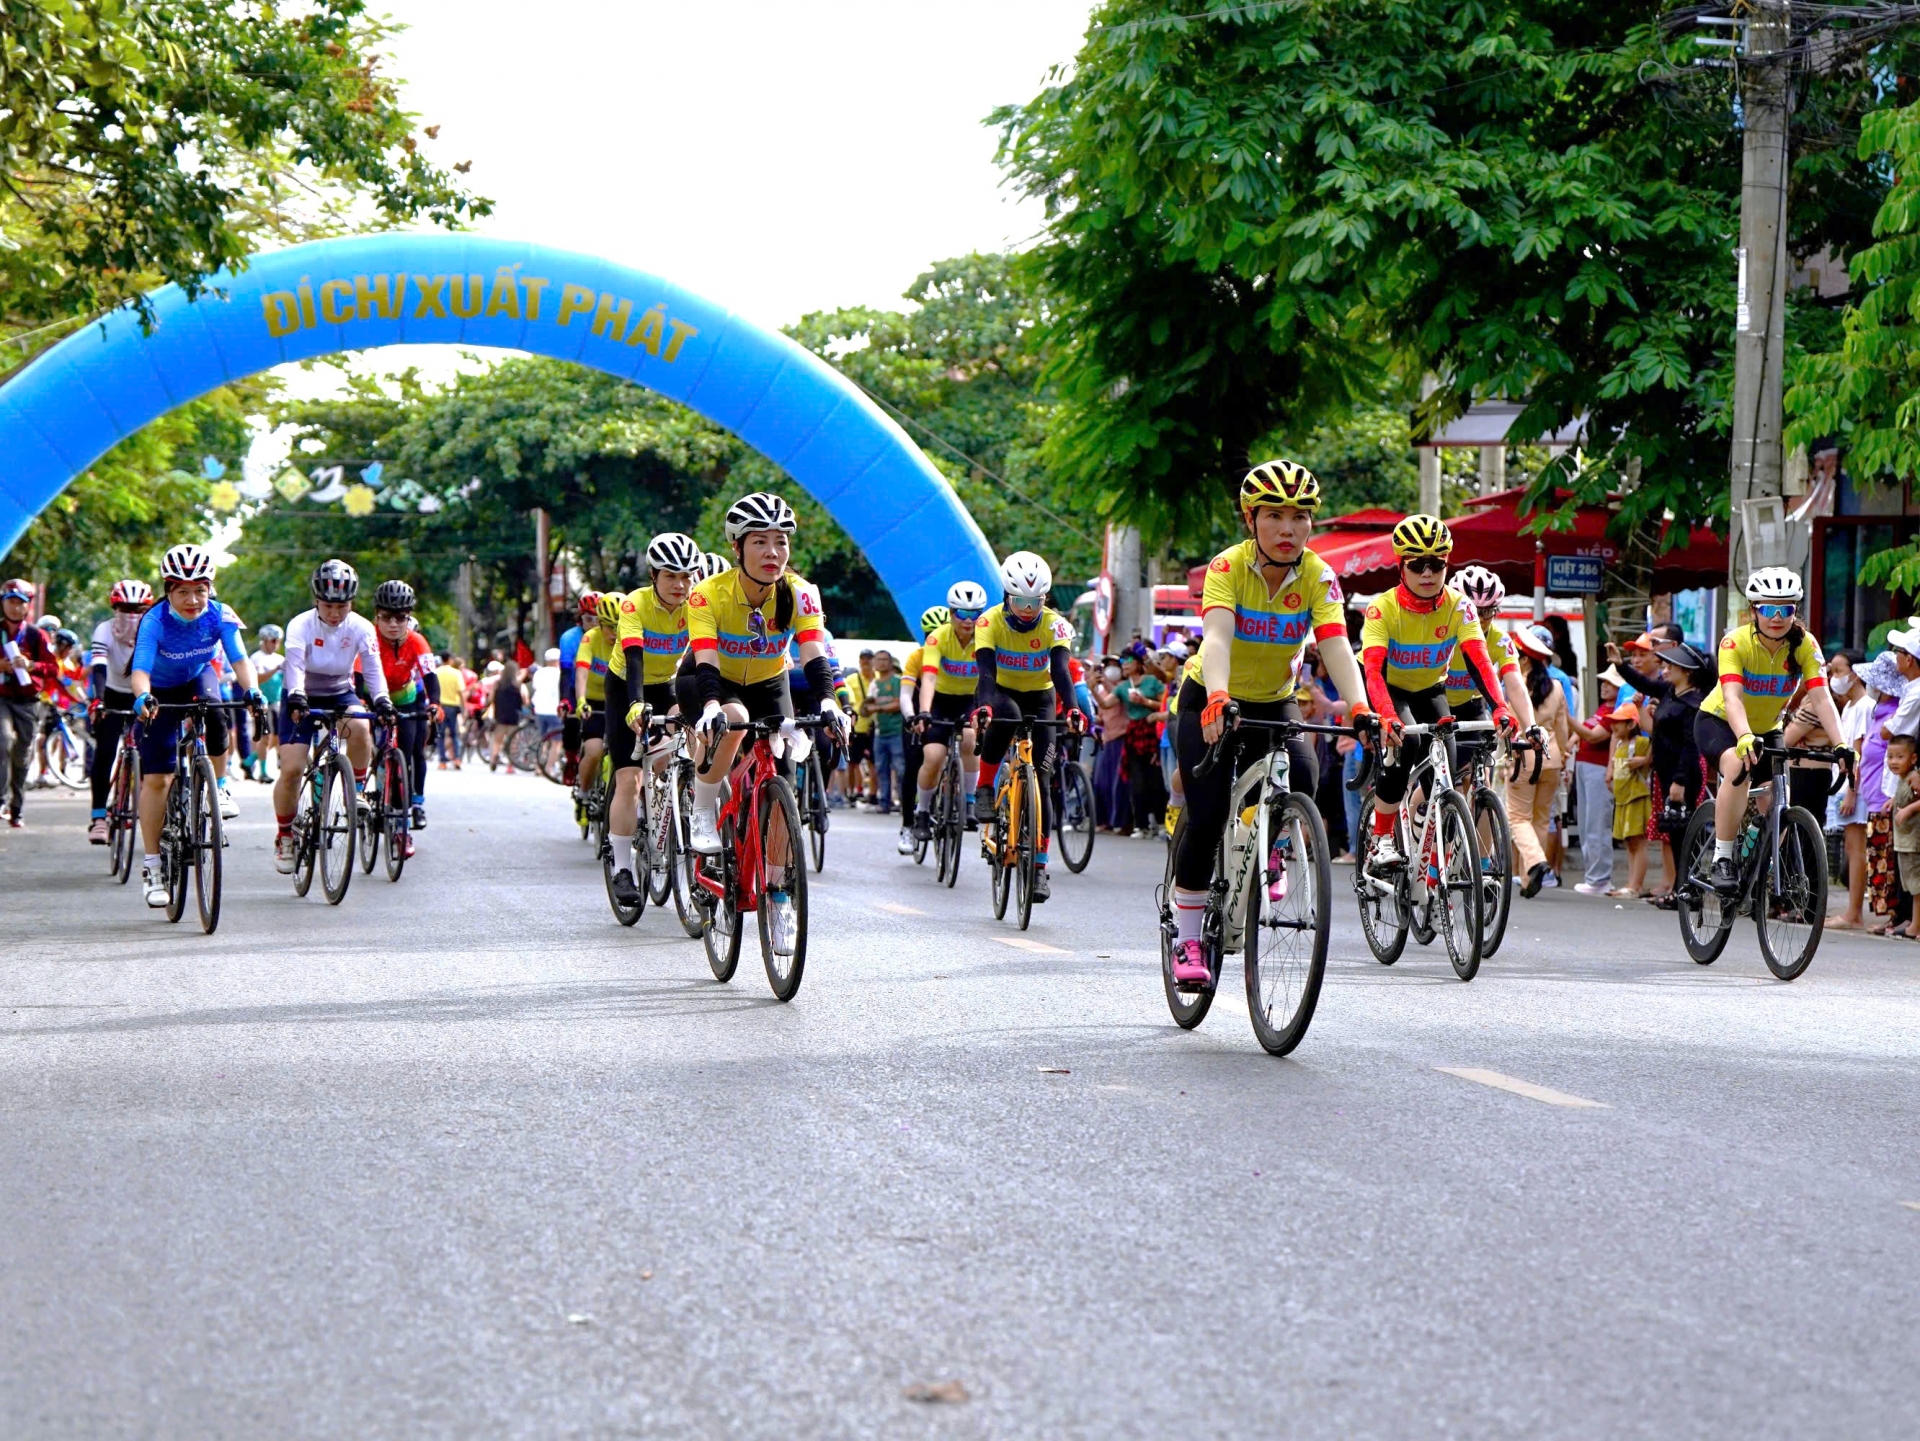 Gần 400 vận động viên từ 60 CLB xe đạp tham gia tranh tài tại Giải đua lần này.